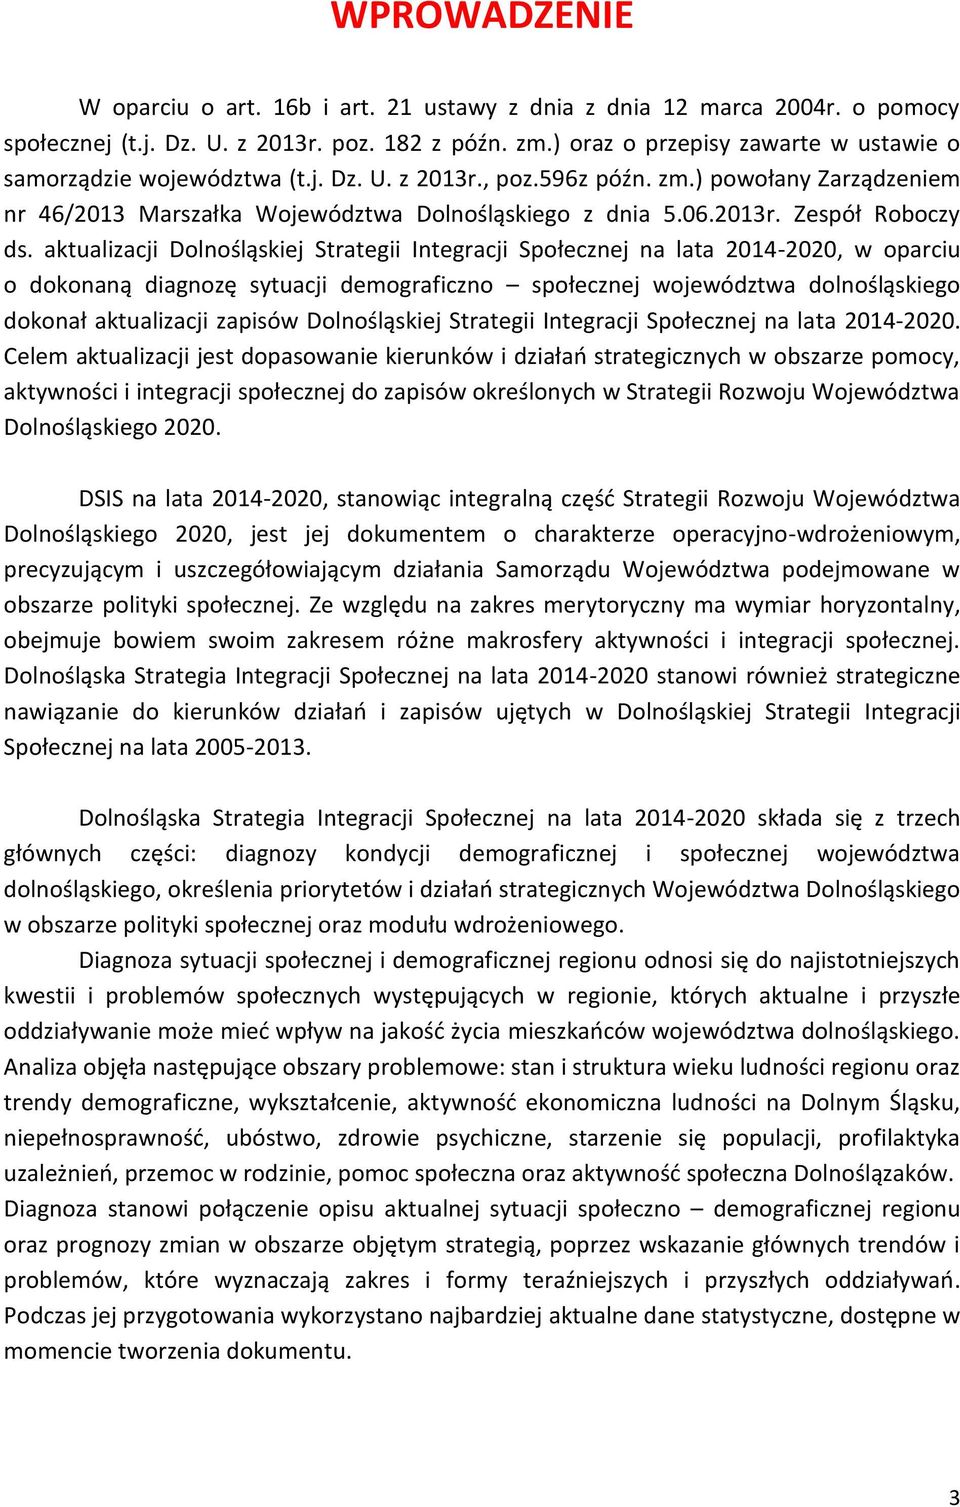 aktualizacji Dolnośląskiej Strategii Integracji Społecznej na lata 2014-2020, w oparciu o dokonaną diagnozę sytuacji demograficzno społecznej województwa dolnośląskiego dokonał aktualizacji zapisów